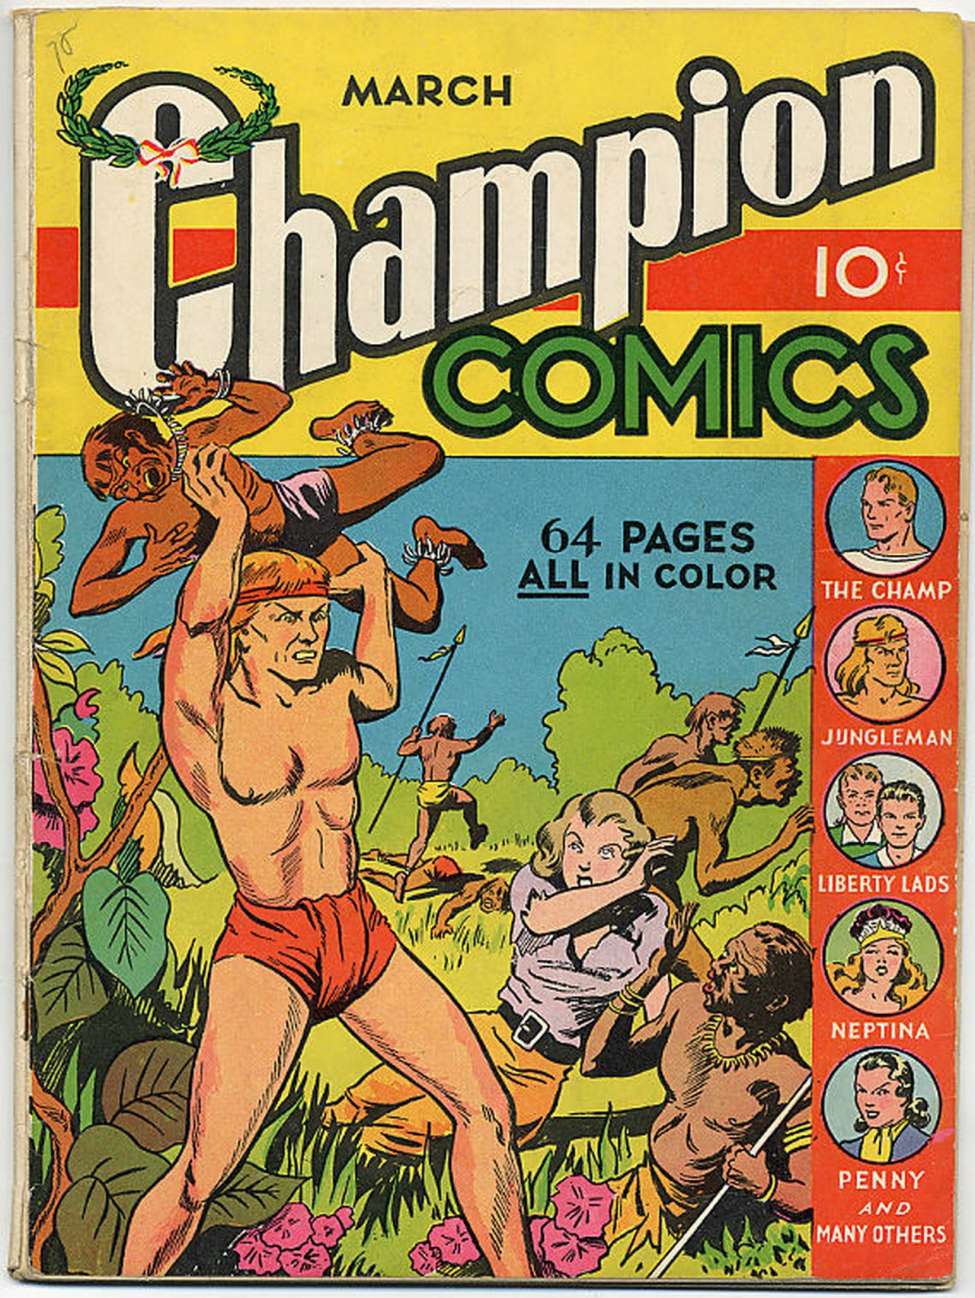 Comic Book Cover For Champion Comics 5 (2 fiche)